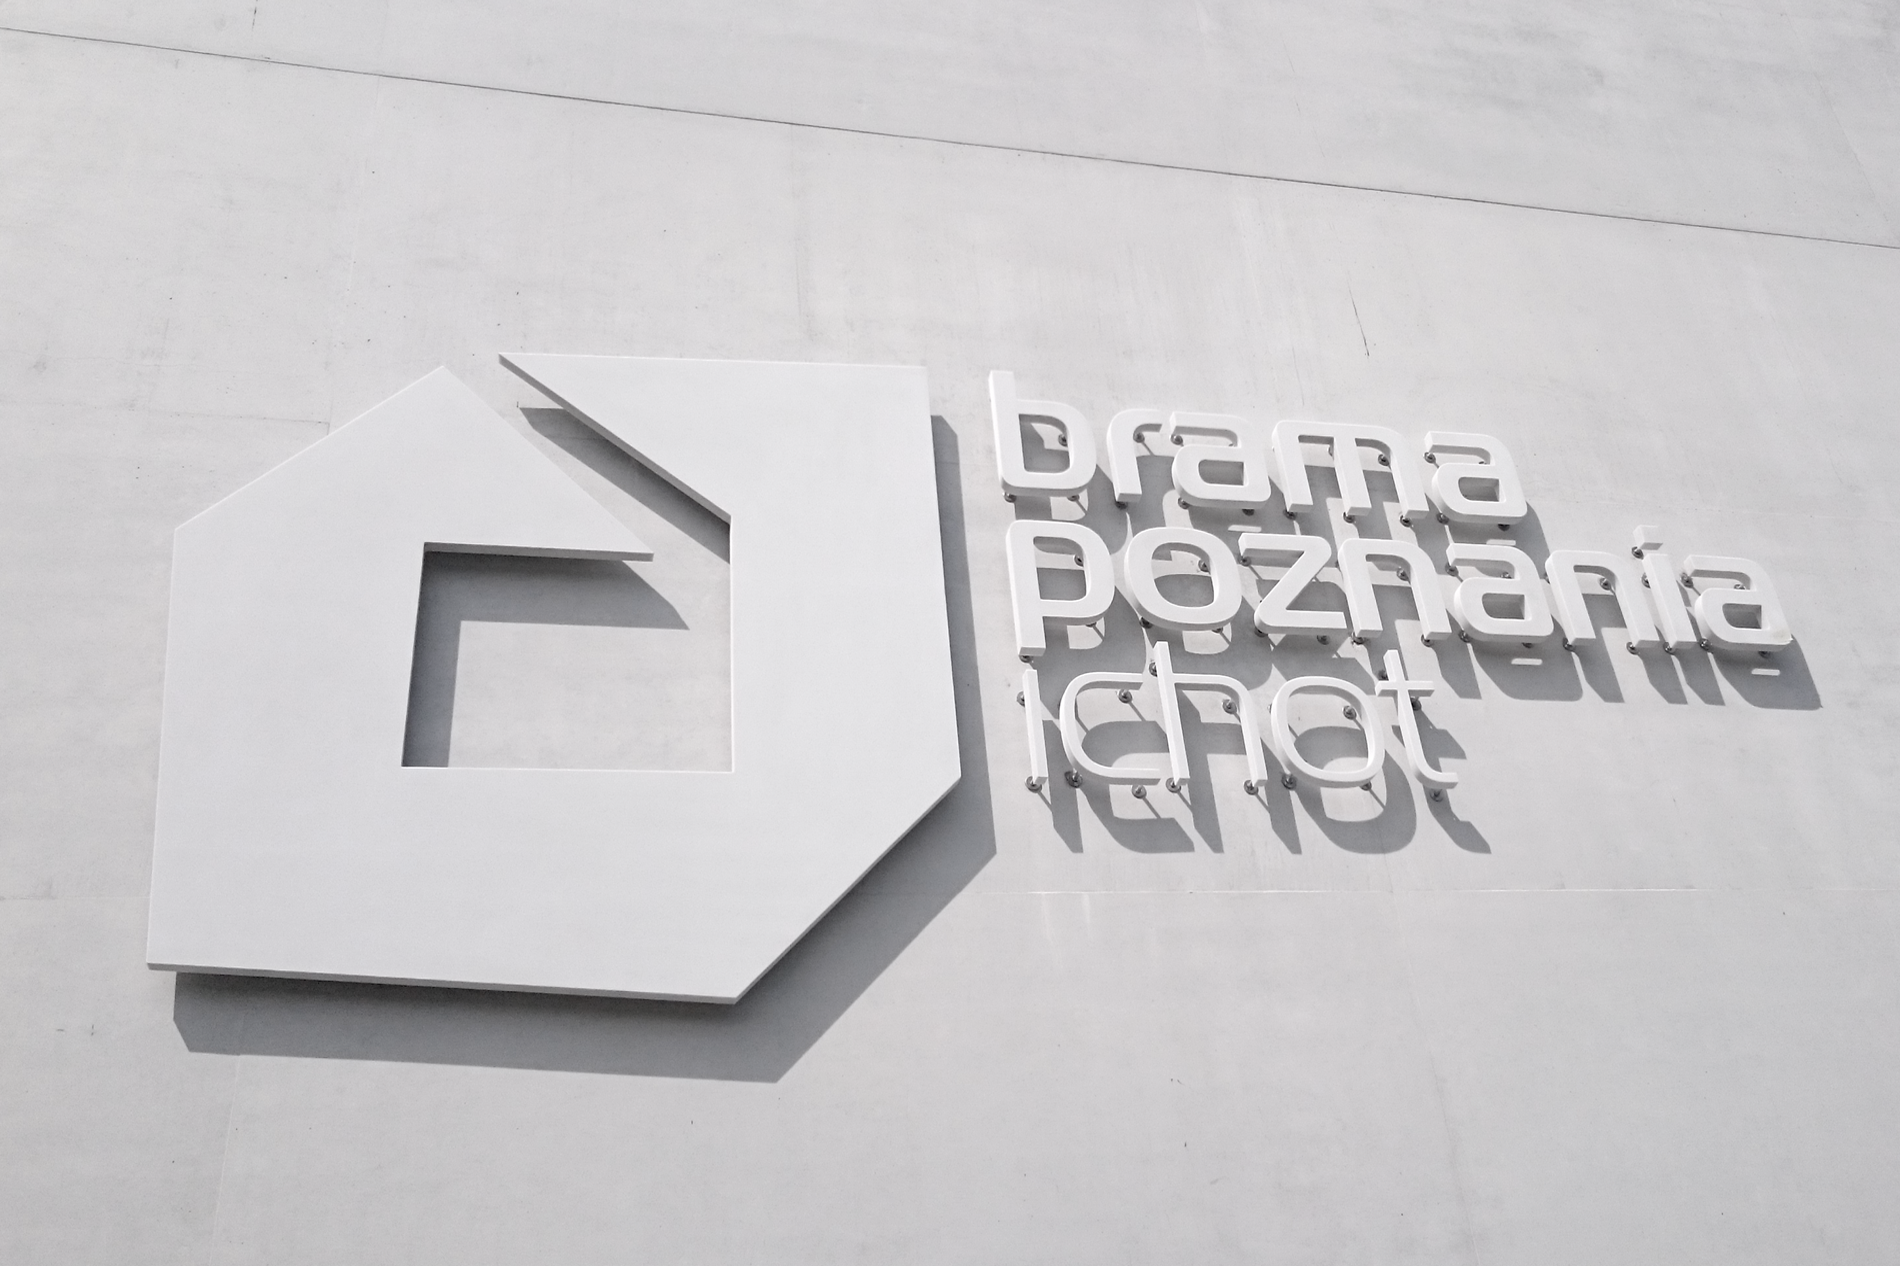 Brama Poznania logo szyld